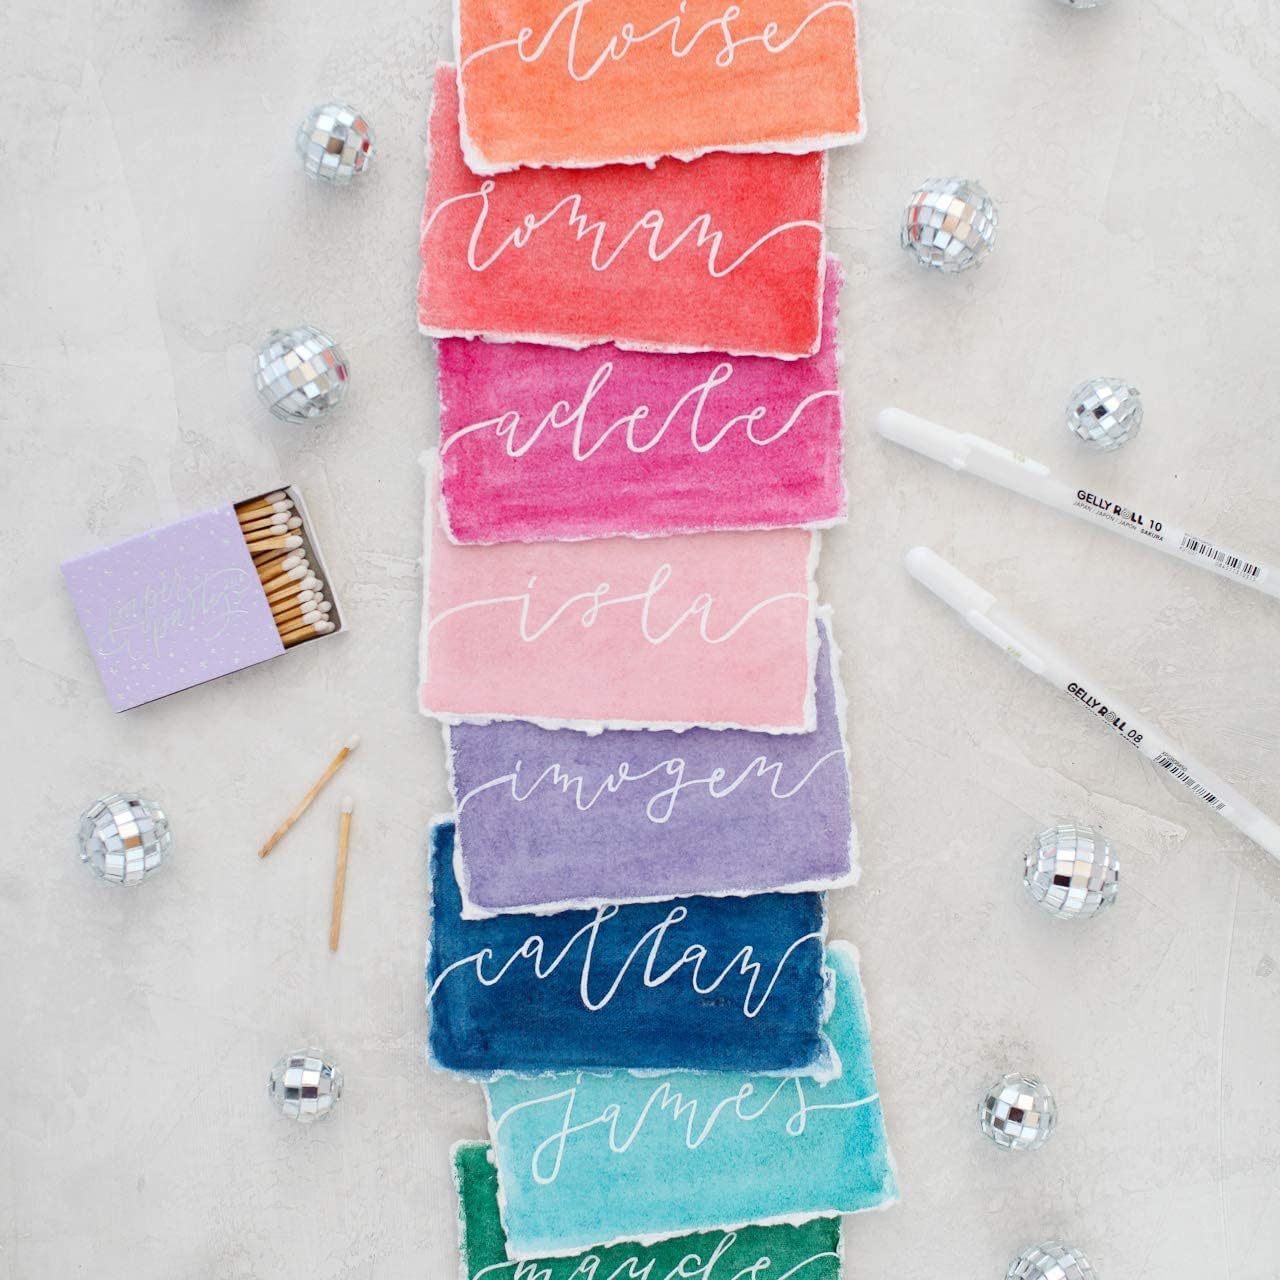 DIY Christmas cards gel pens for addressing envelopes. Click to order.